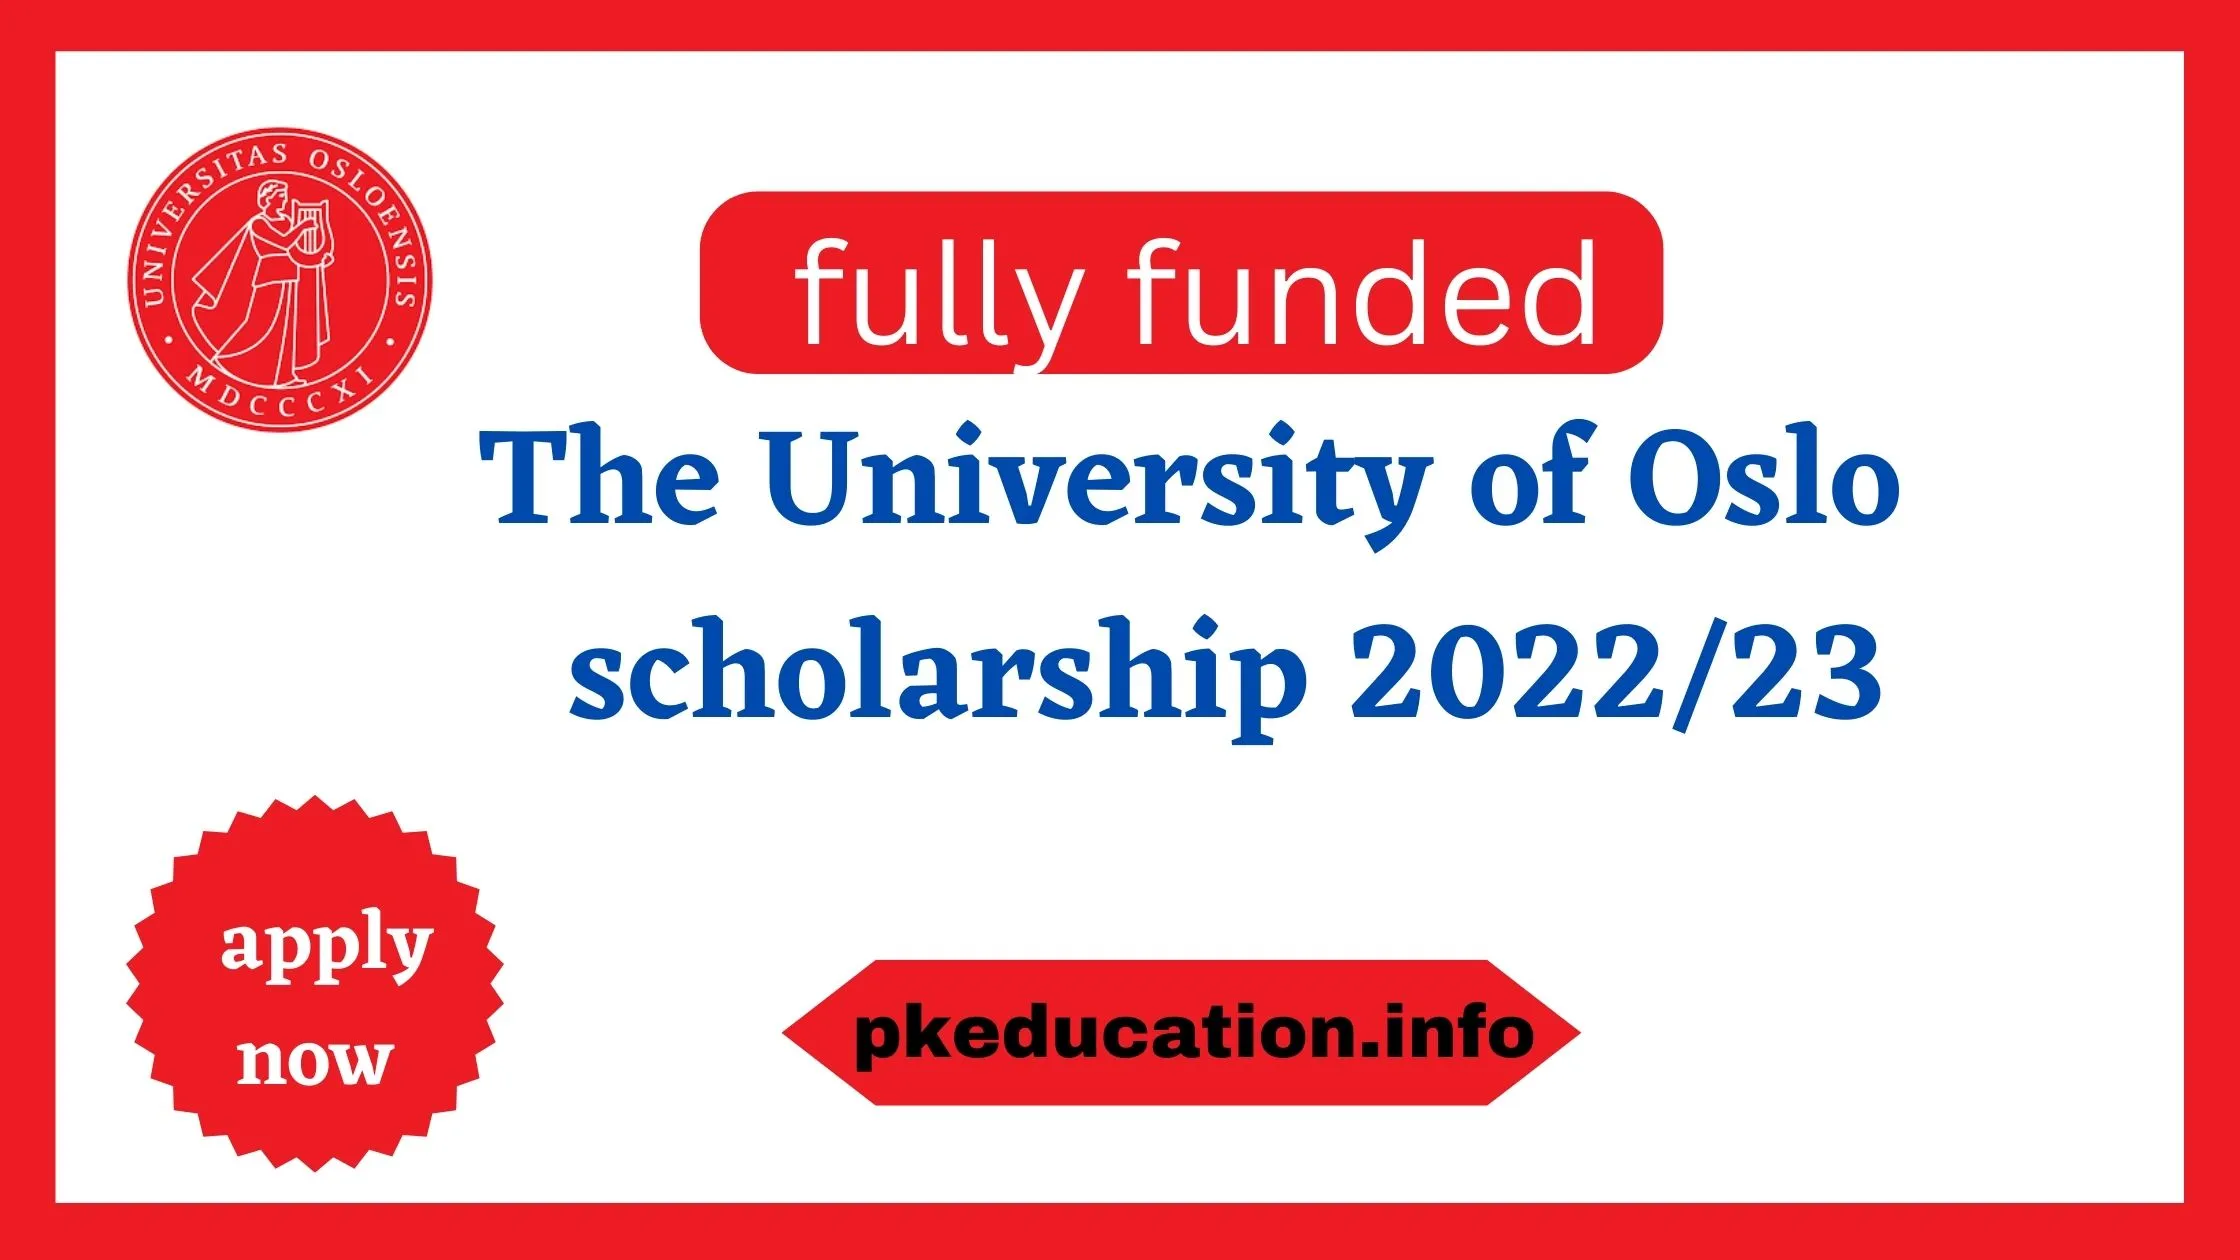 university of Oslo fully funded scholarship 2022/23